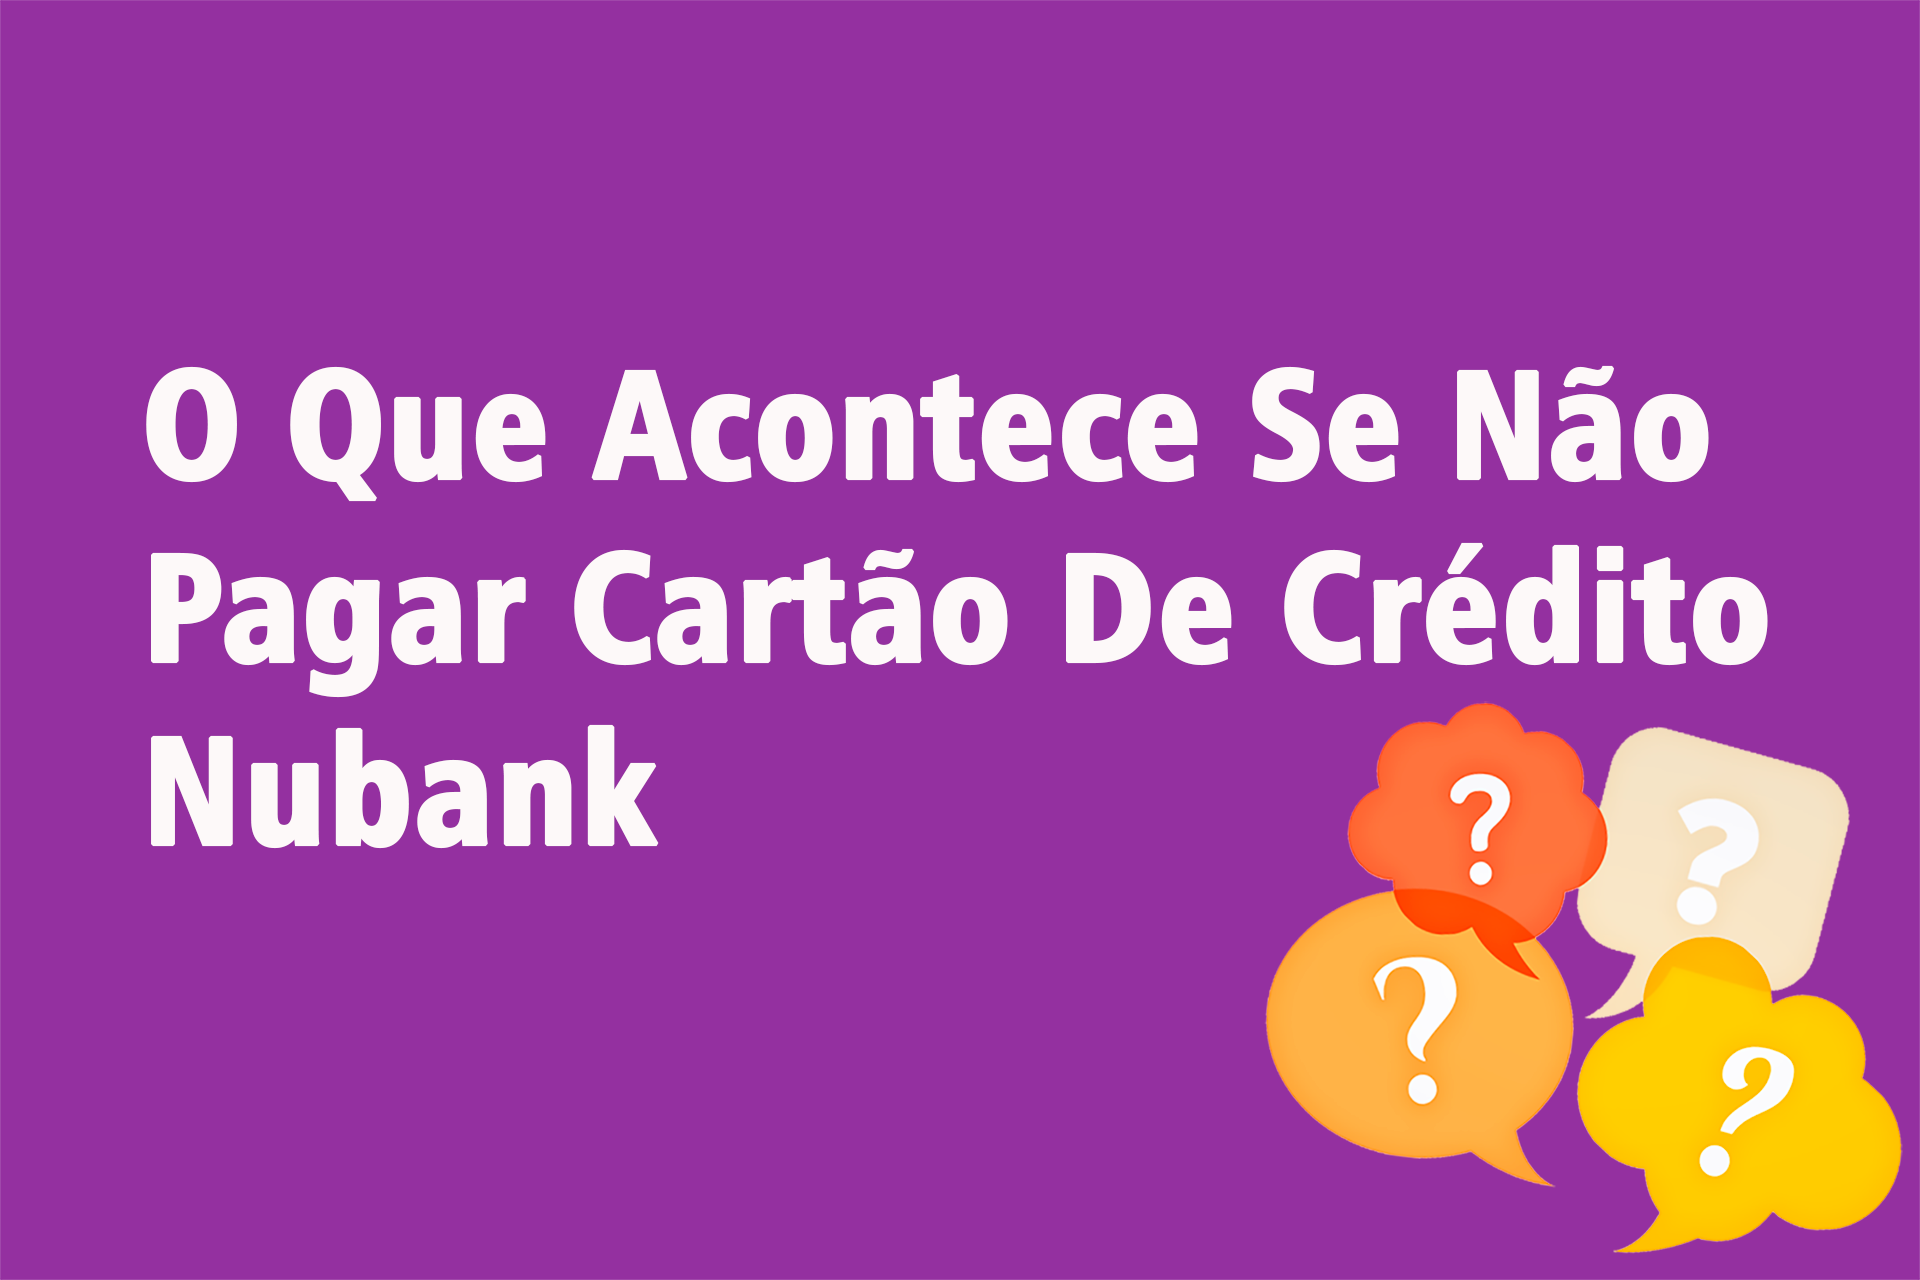 O Que Acontece Se Não Pagar Cartão De Crédito Nubank?